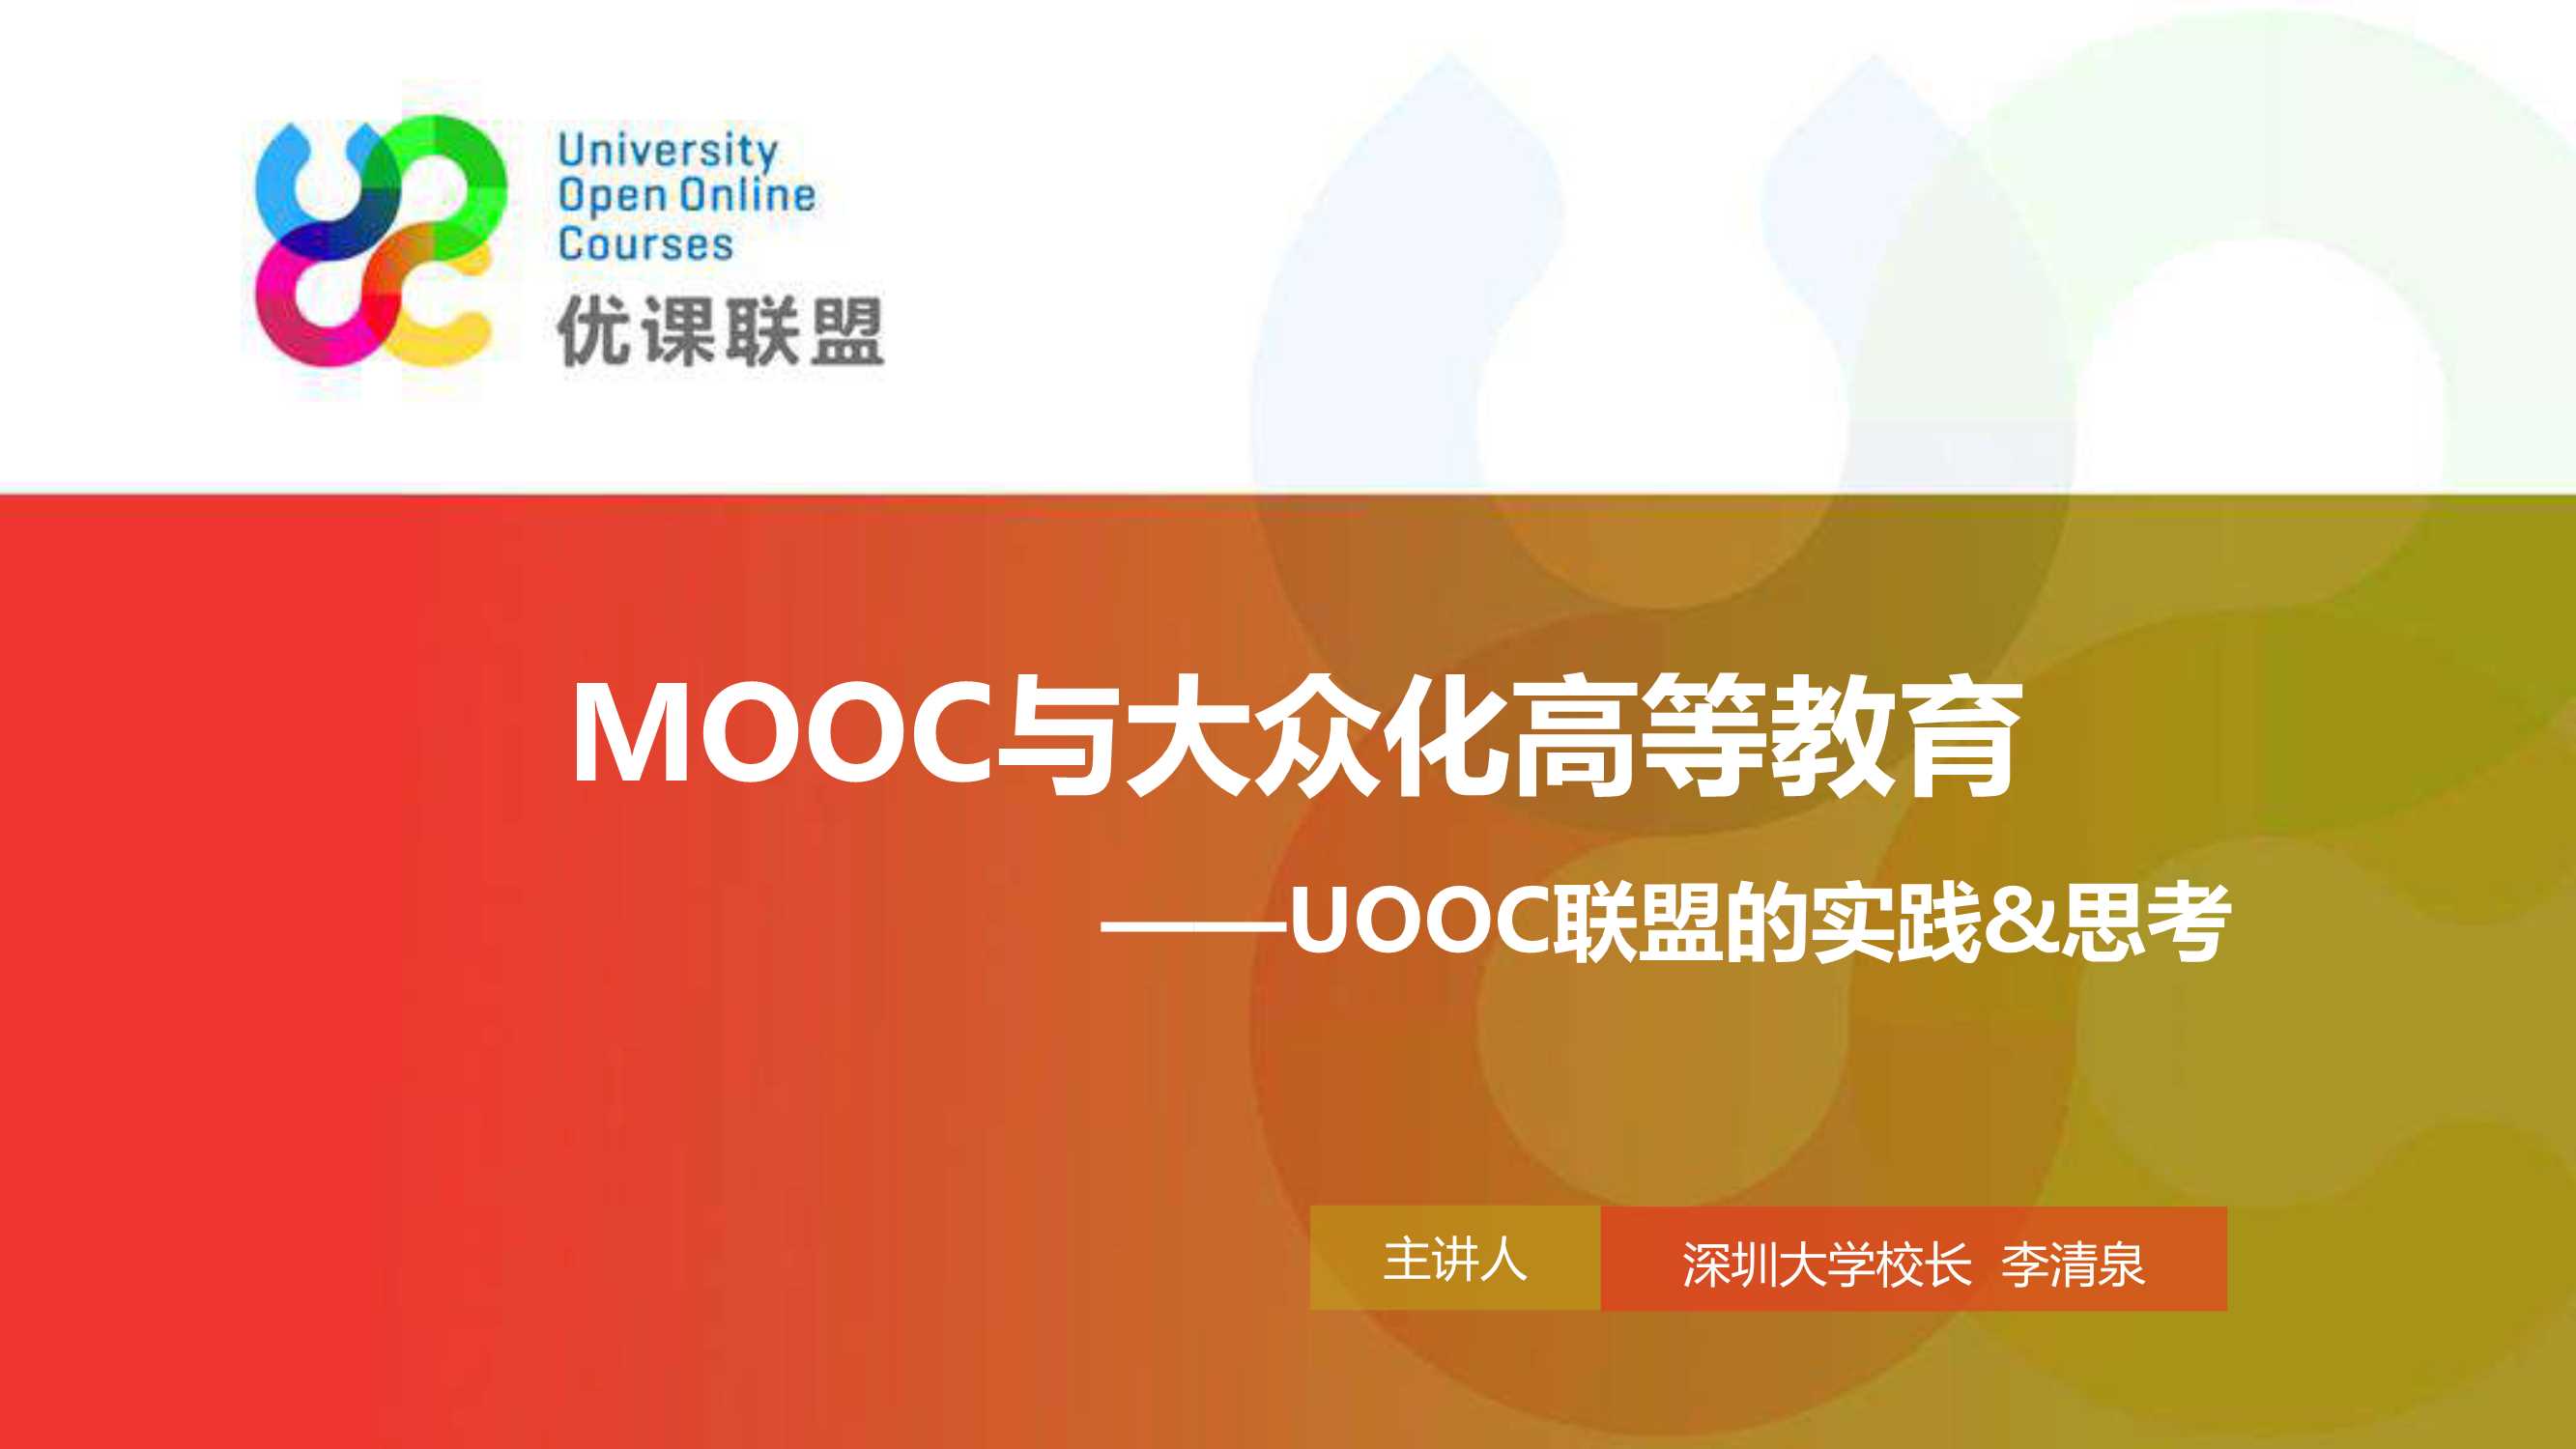 李清泉-MOOC与大众化高等教育-2015.10-26页